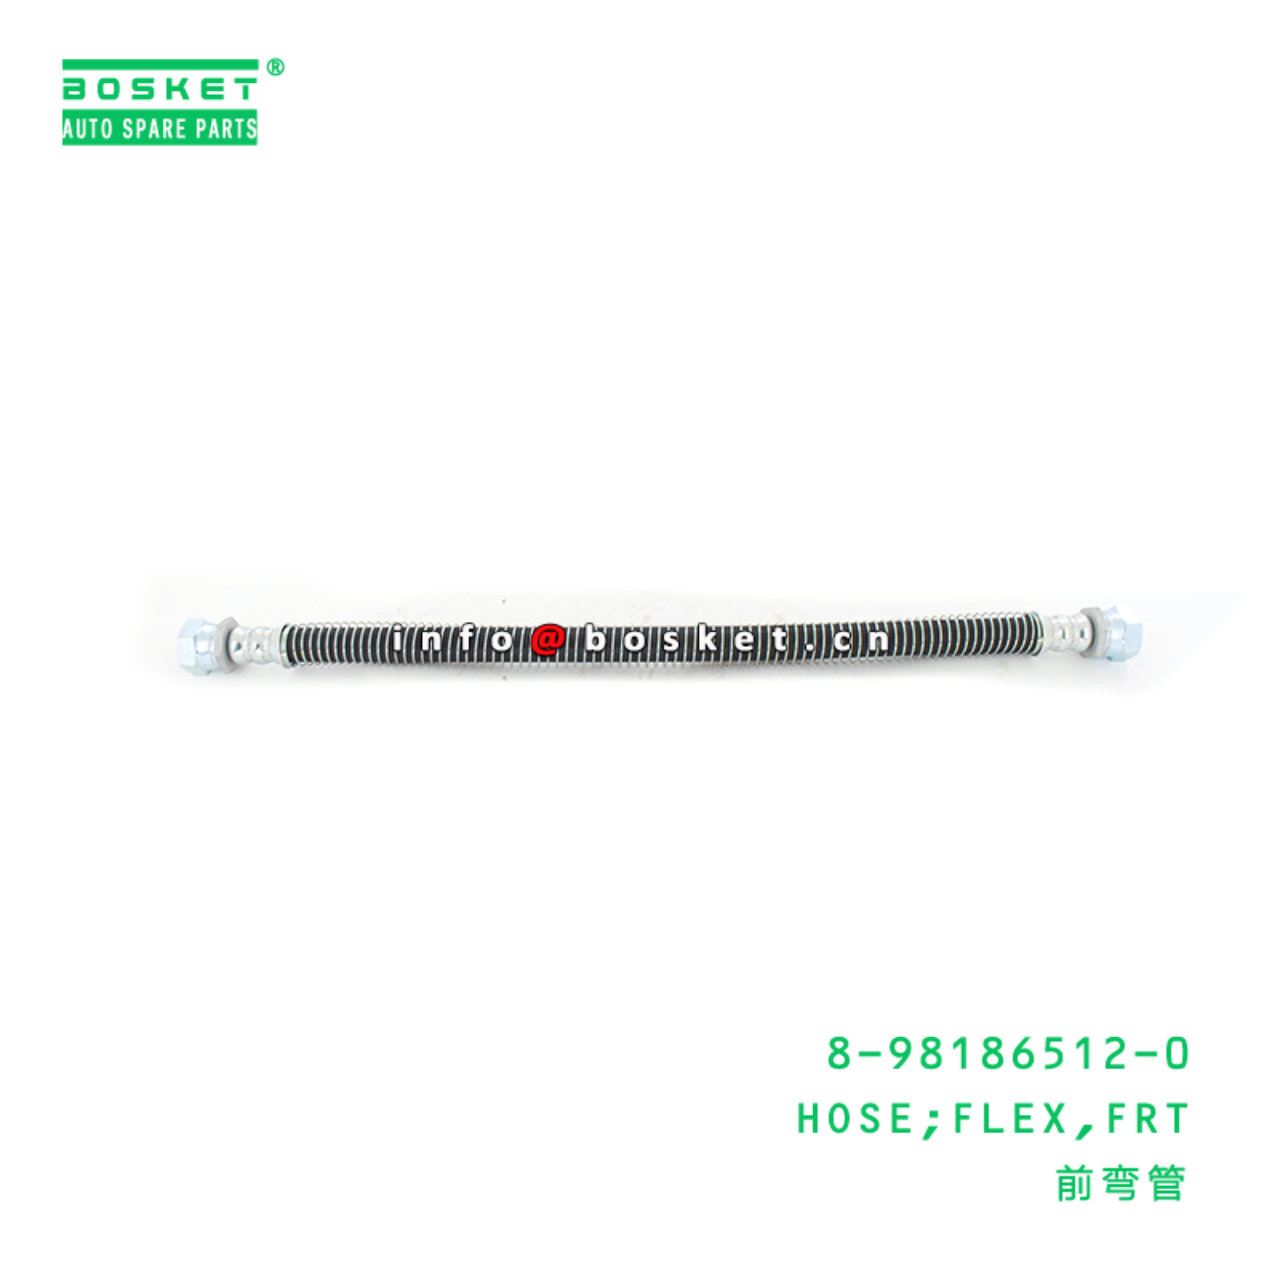 8-98186512-0 Front Flex Hose Suitable for ISUZU NQR 8981865120